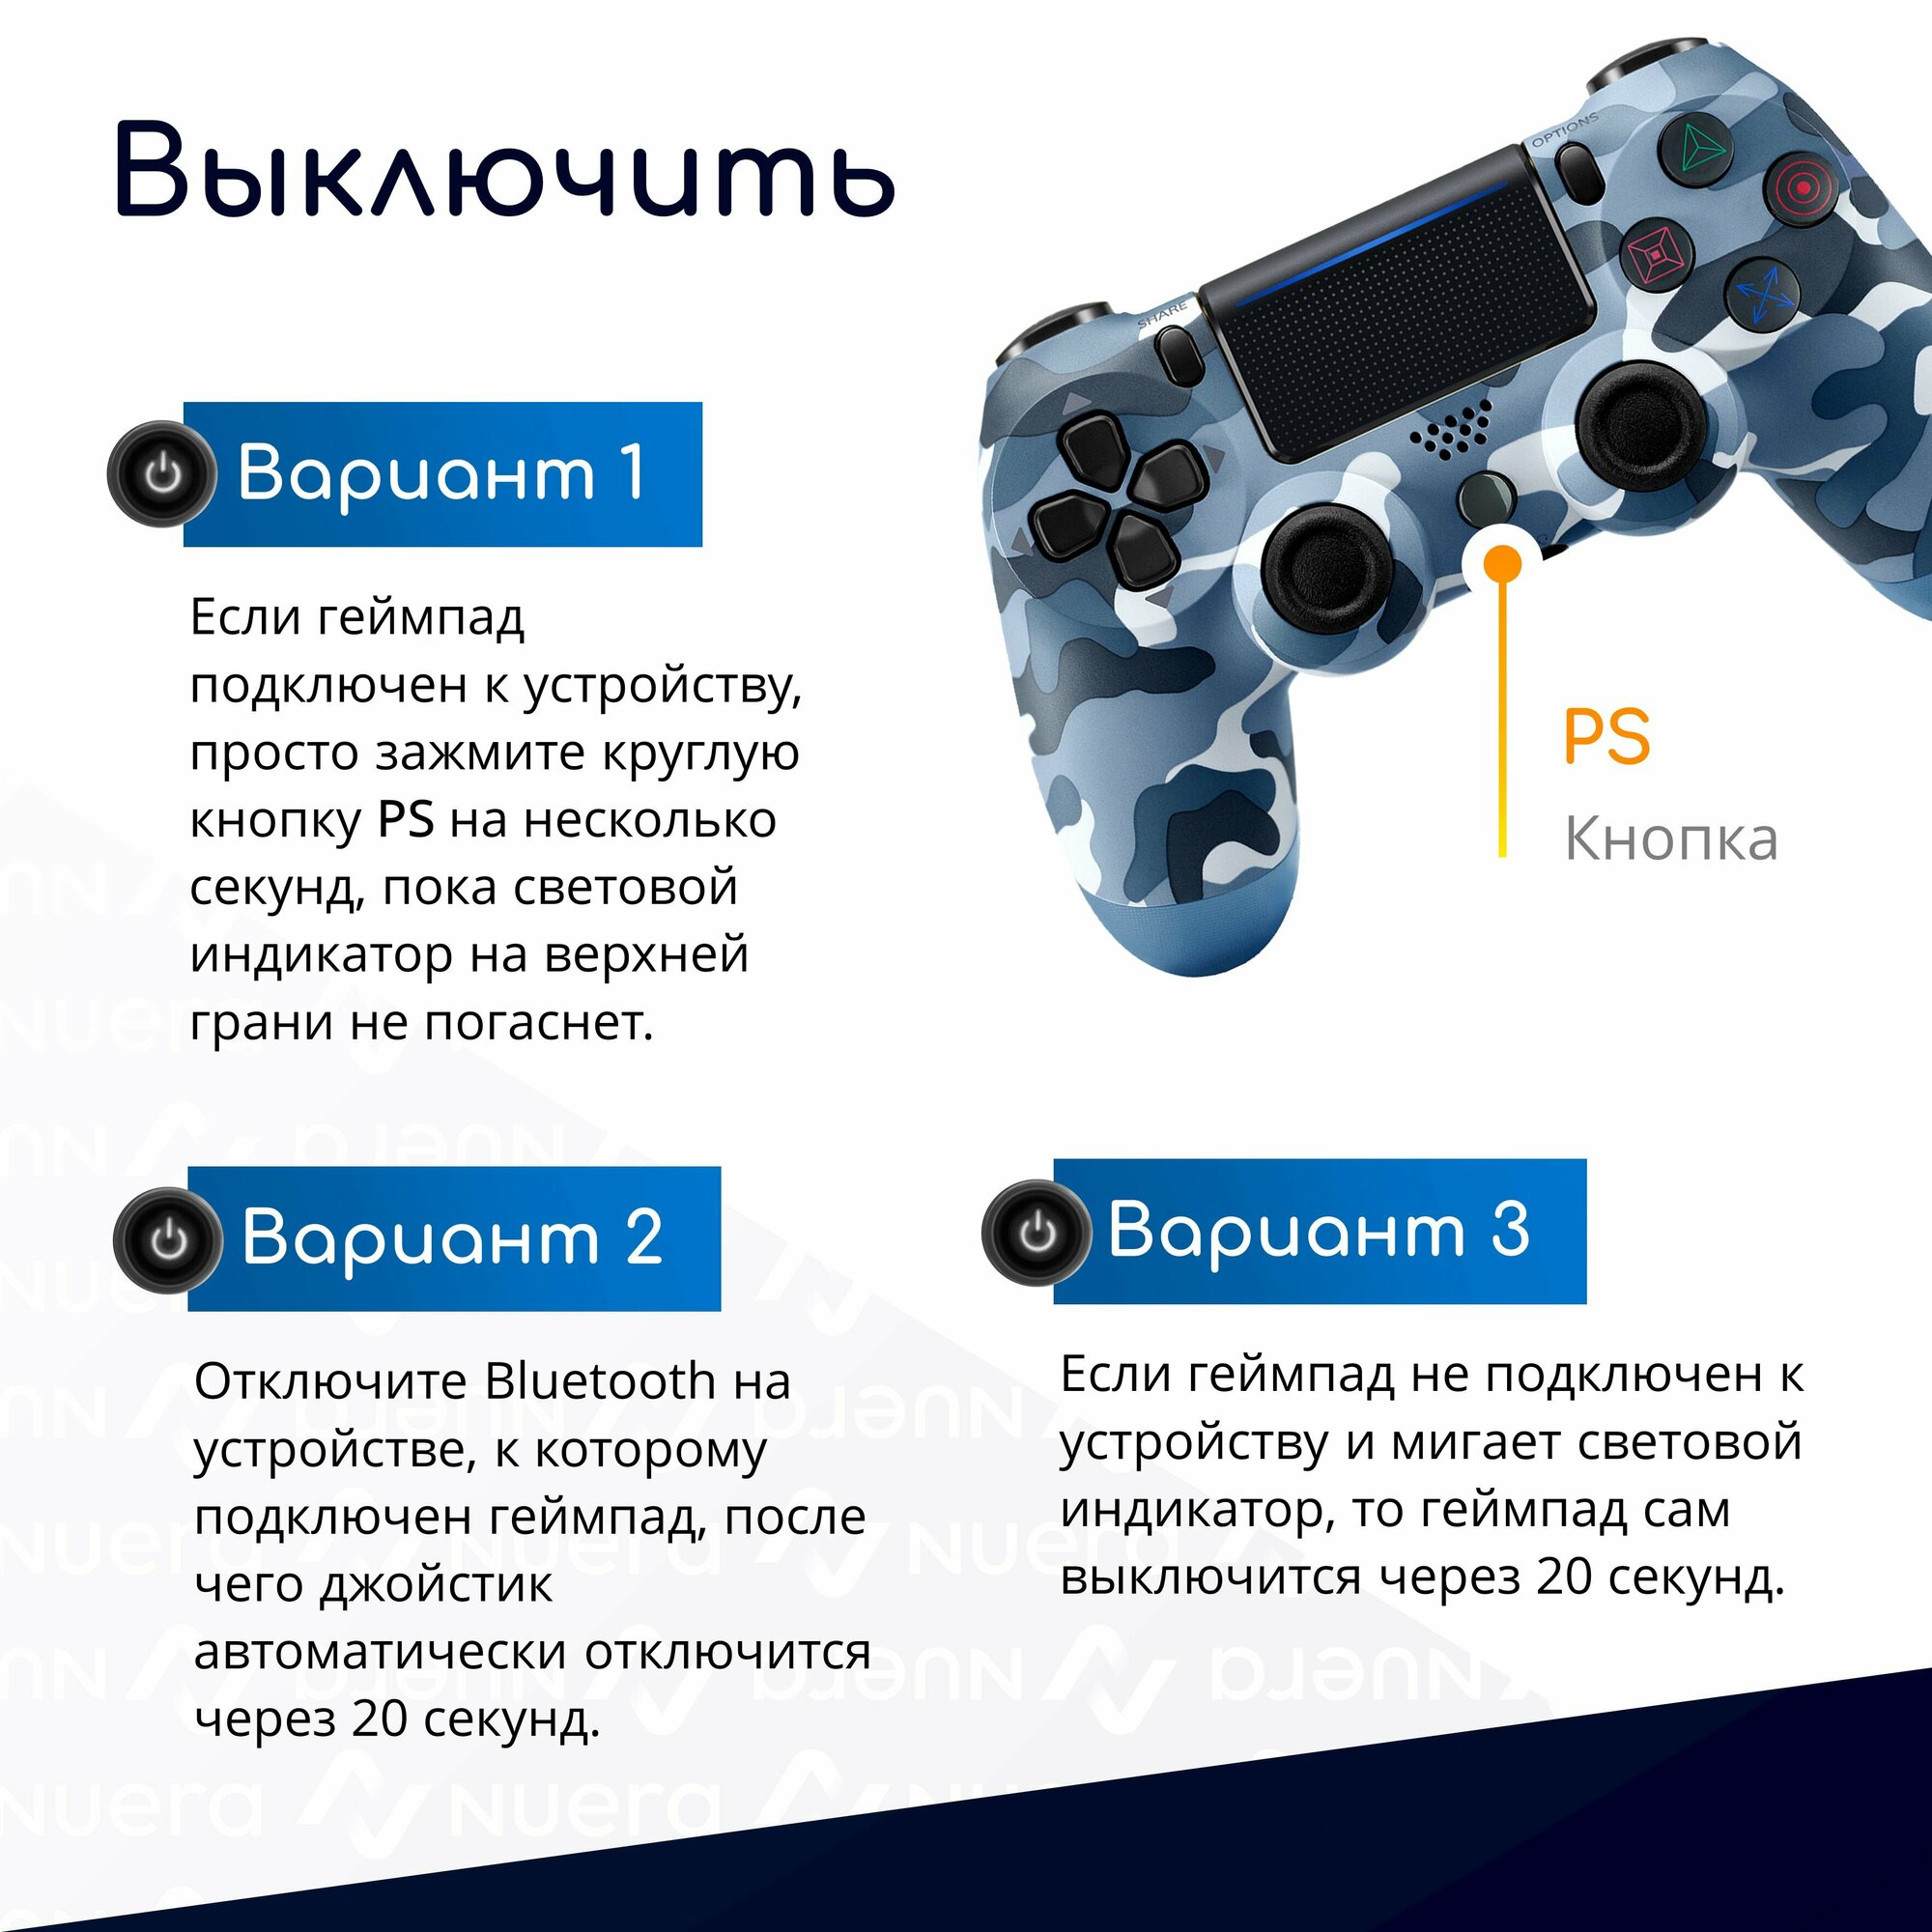 Беспроводной геймпад для PS4 с зарядным кабелем, синий камуфляж / Bluetooth / джойстик для PlayStation 4, iPhone, iPad, Android, ПК / Original Drop